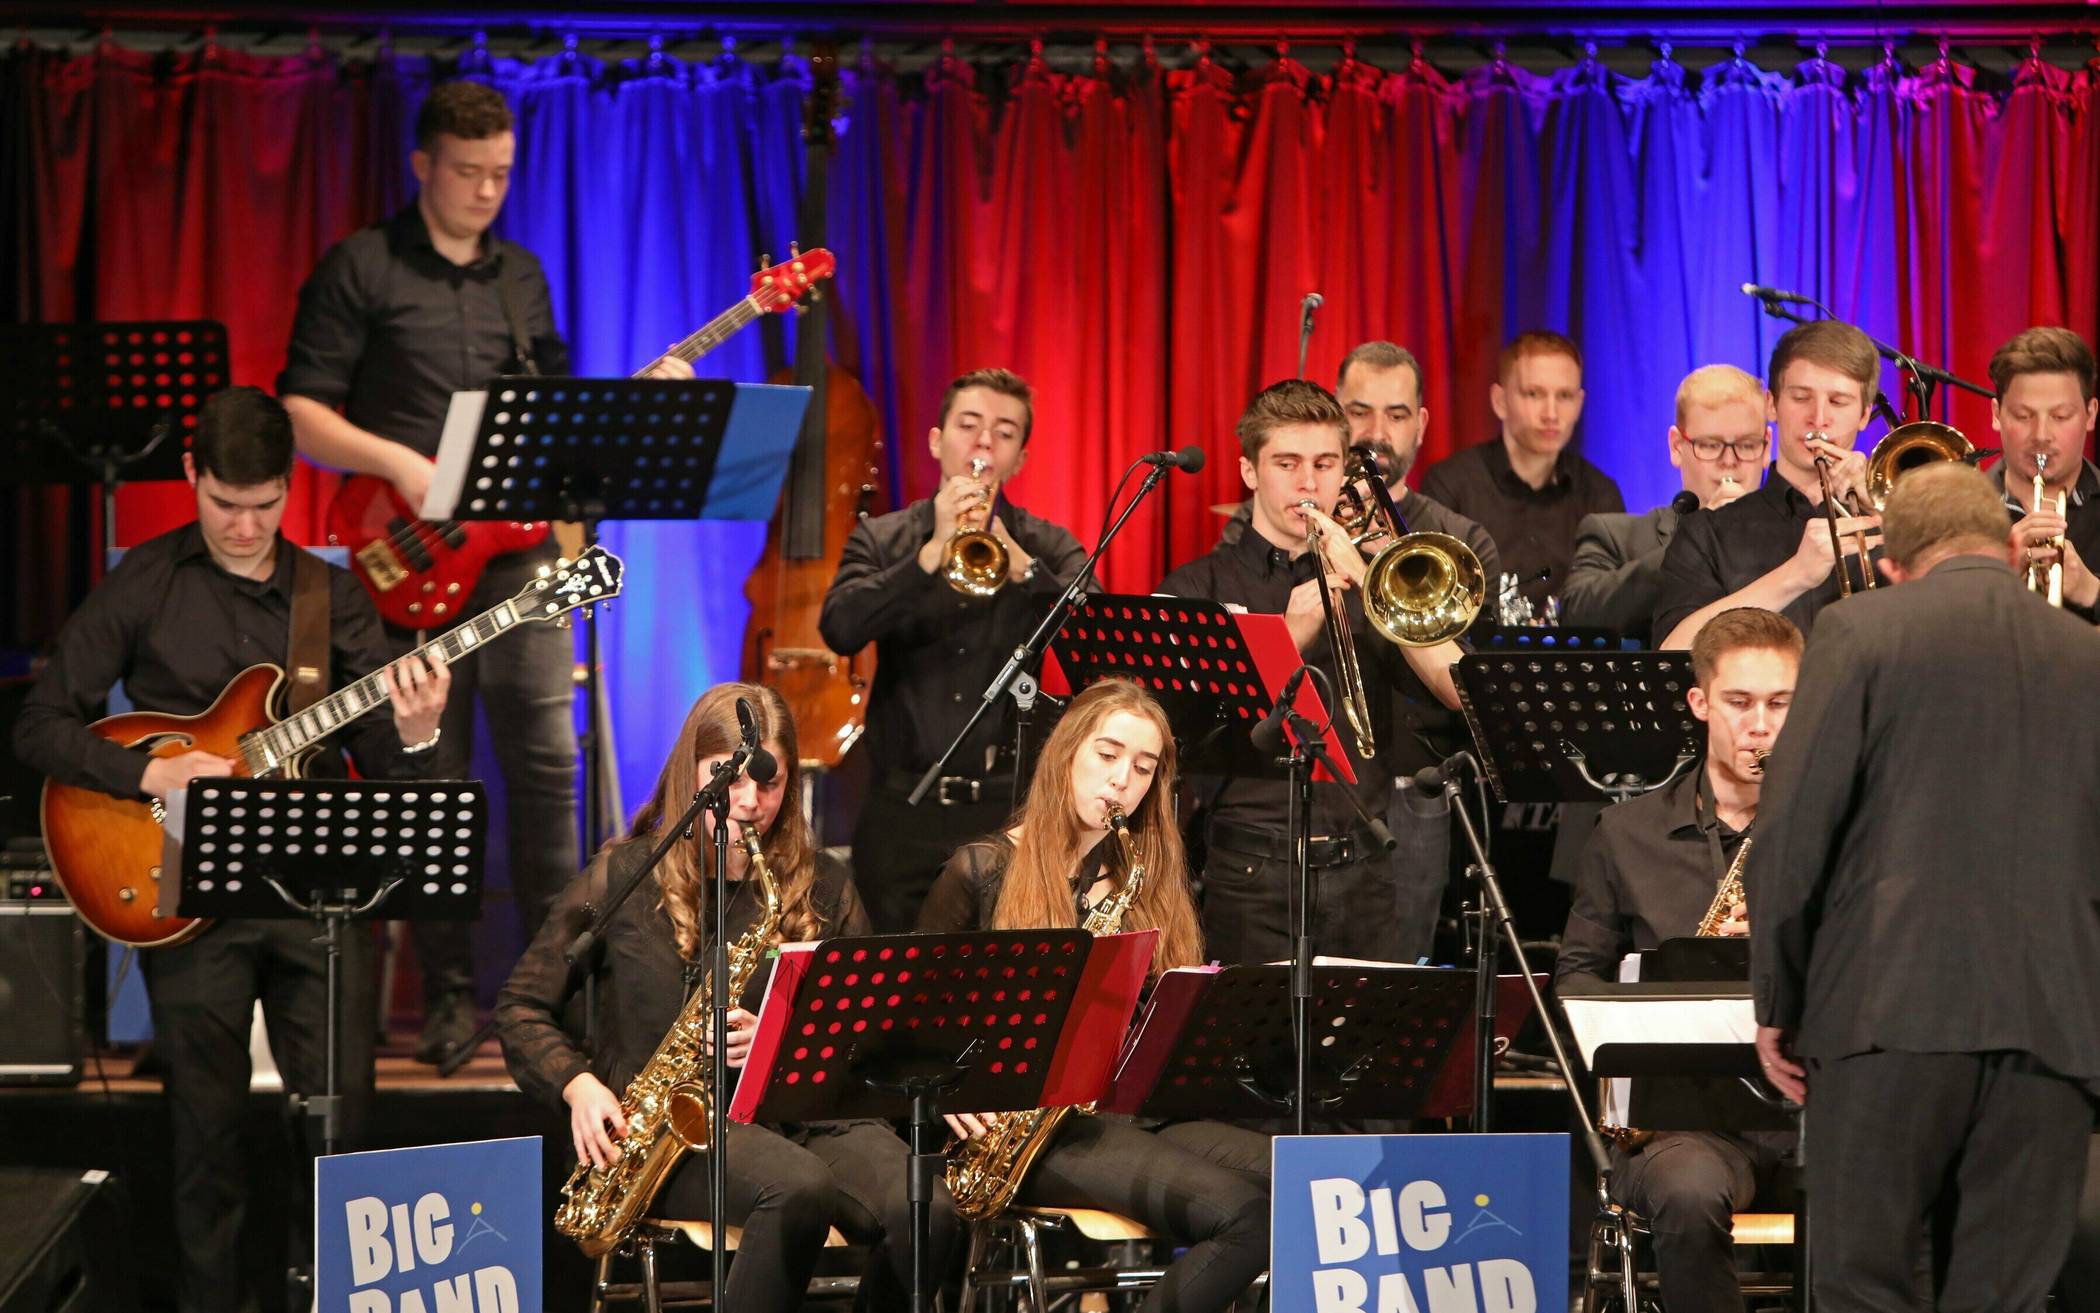 Big Band des Gymnasiums startet in Konzertsaison